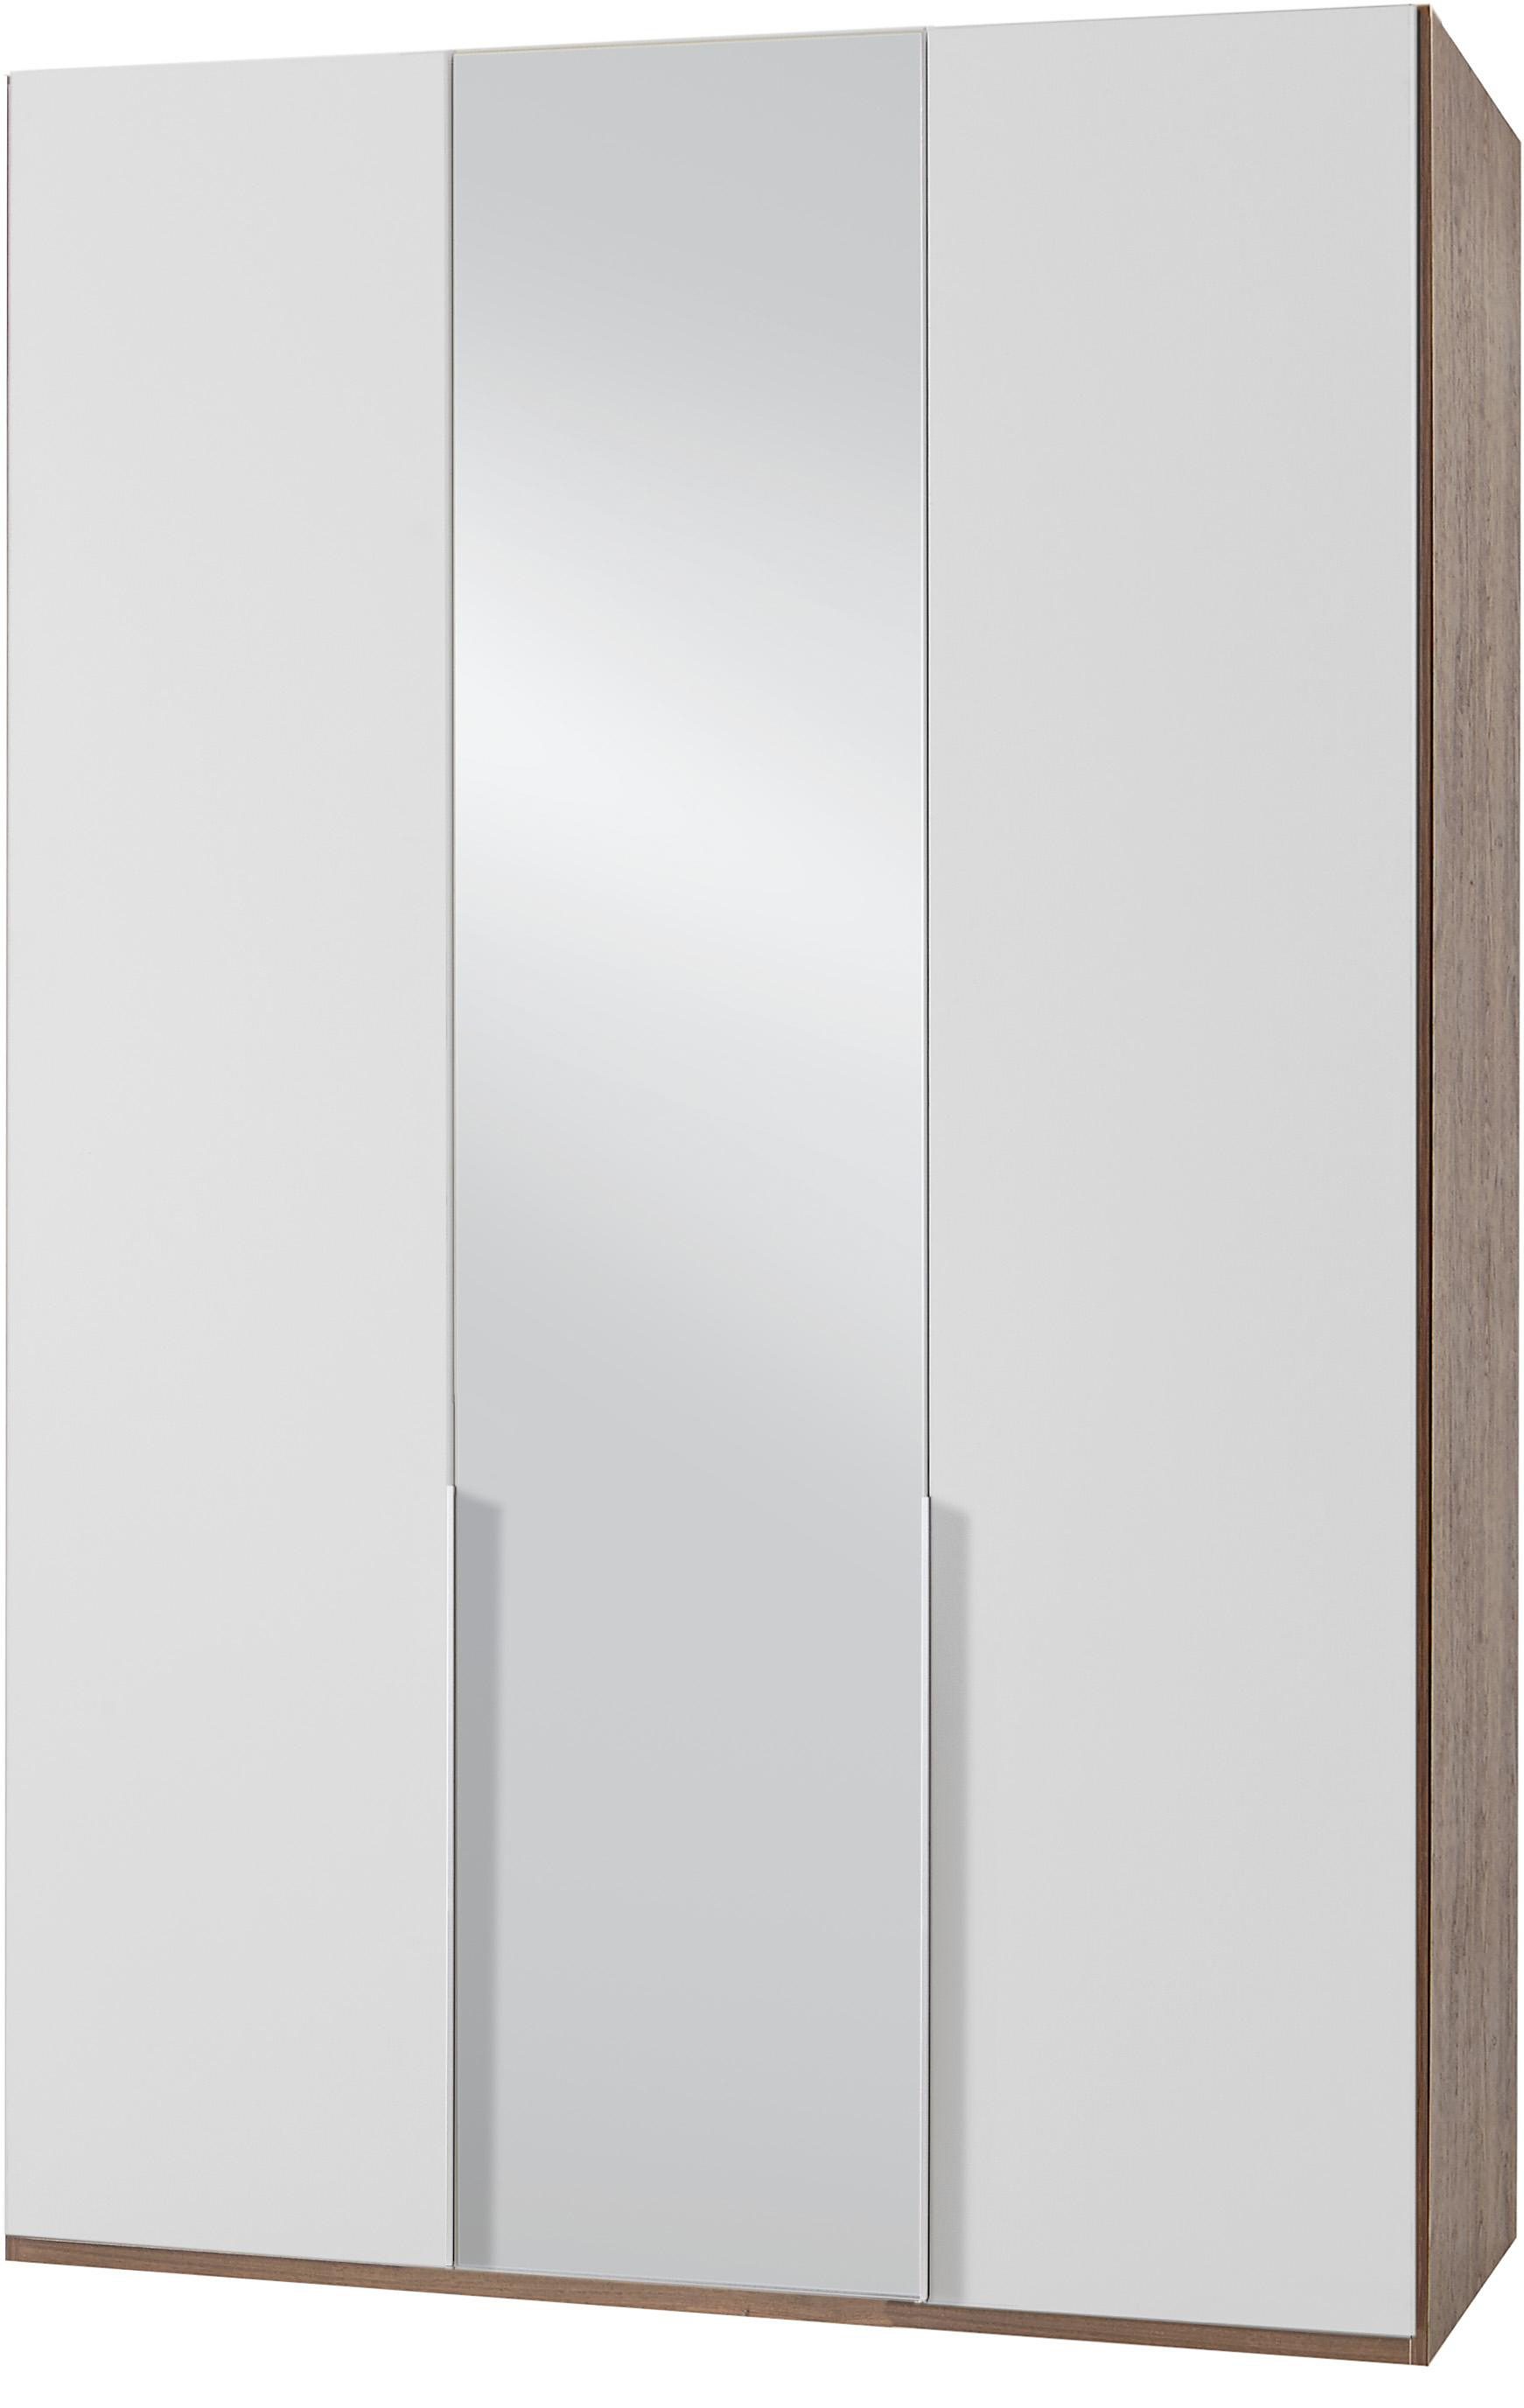 Kledingkasten Wimex garderobekast met spiegeldeuren New York 365275